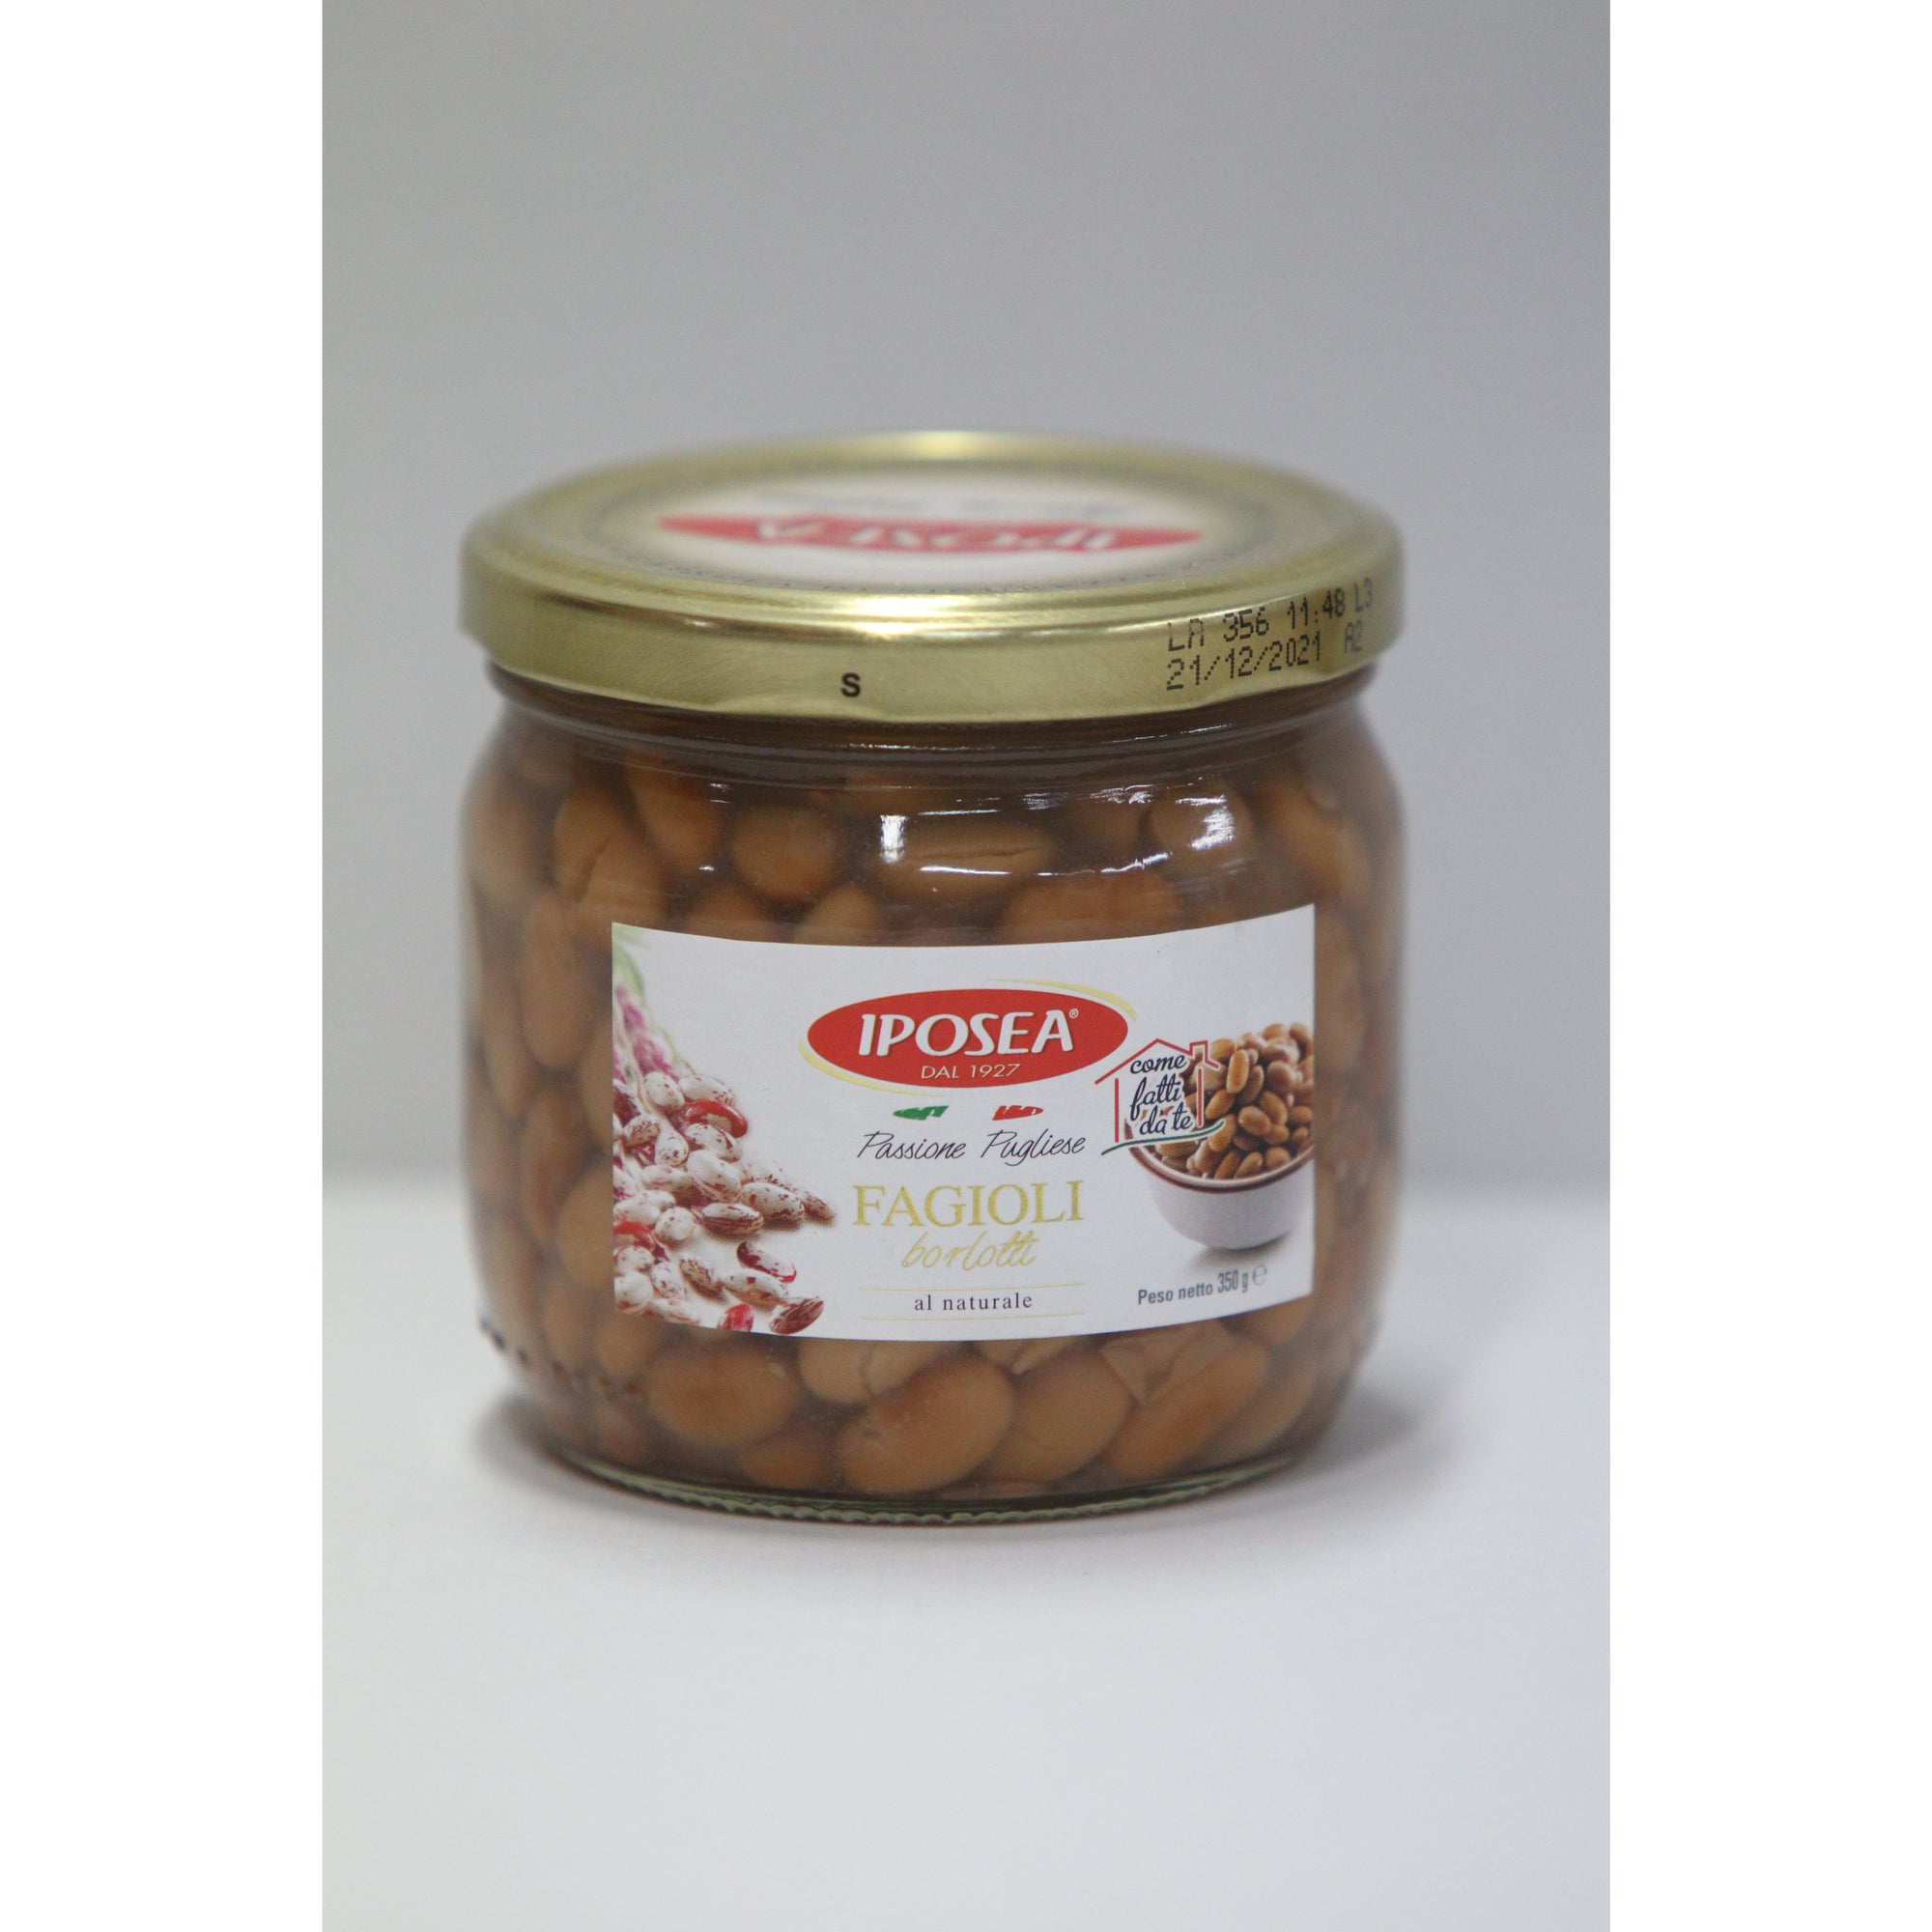 Iposea Fagioli Borlotti Beans 370g